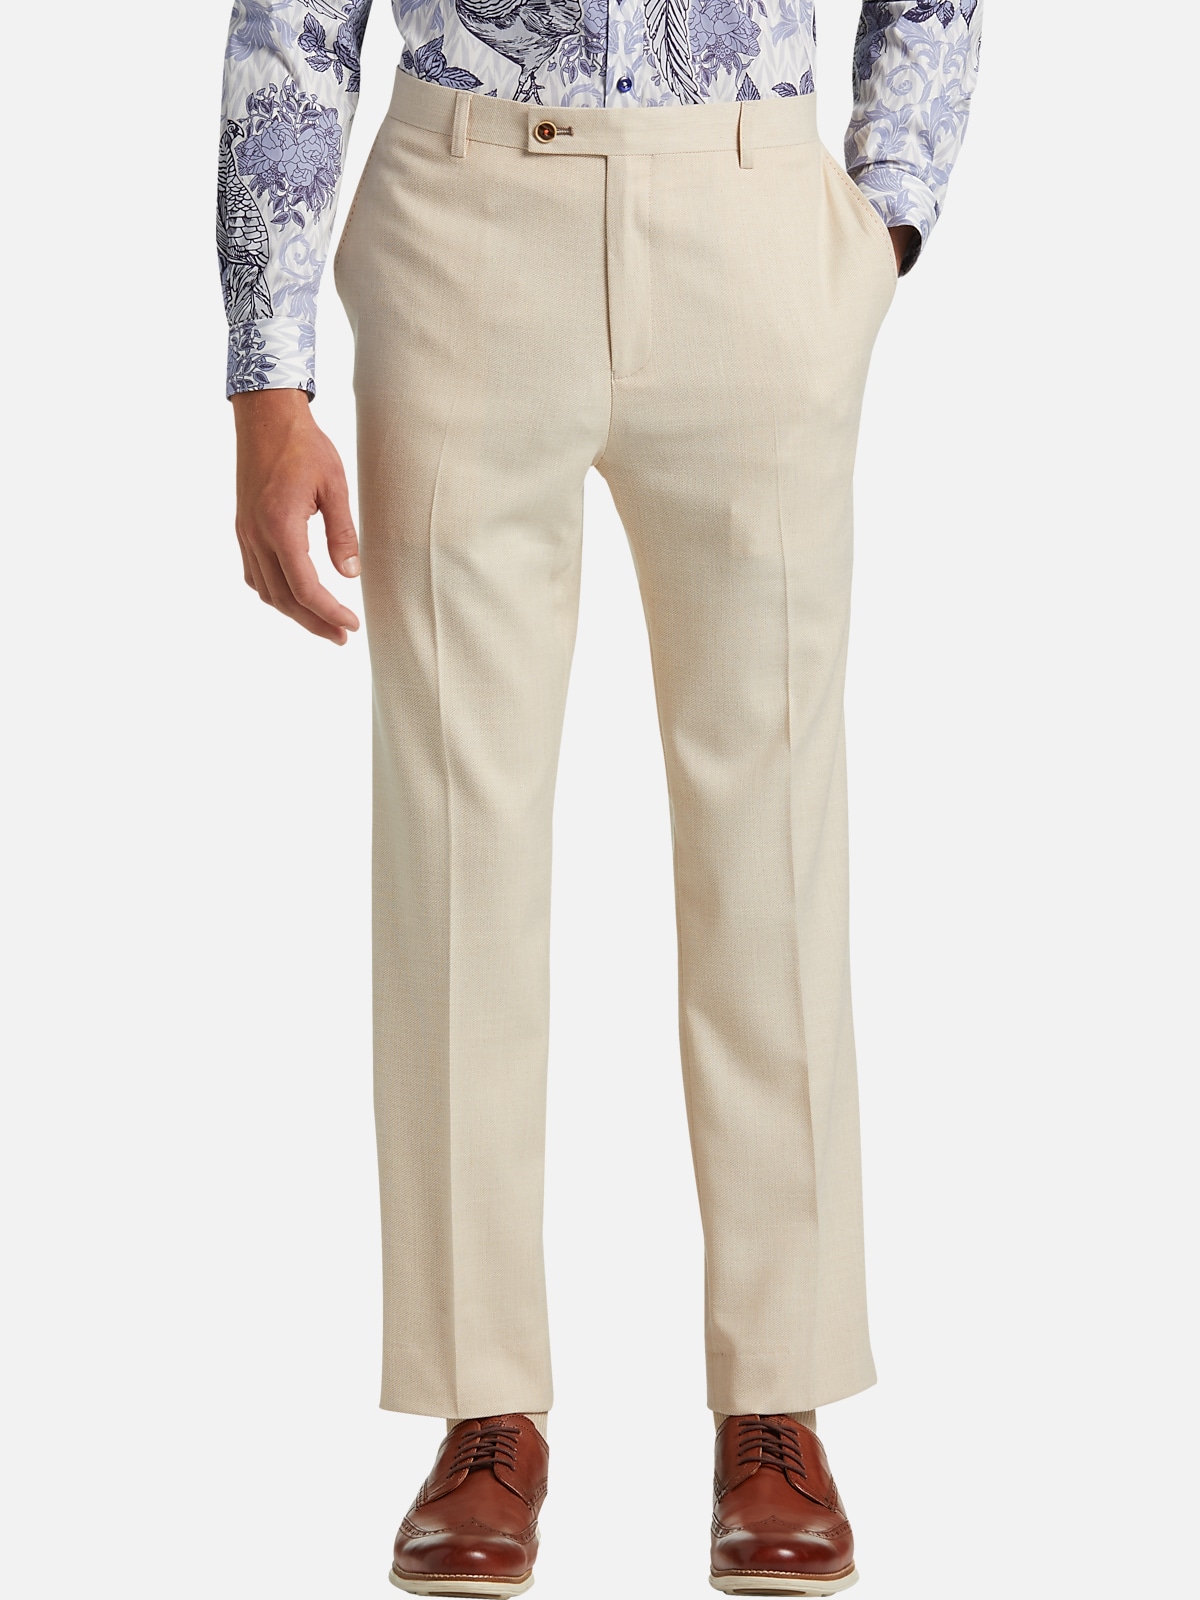 Paisley &Amp; Gray Slim Fit Suit Separates Pants | Pants| Men's Wearhouse